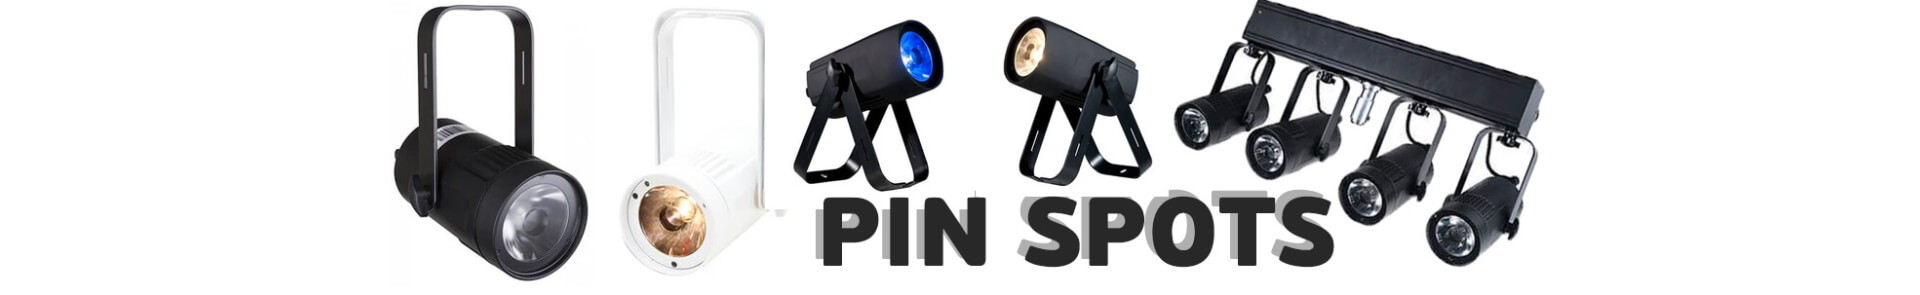 Pin Spots